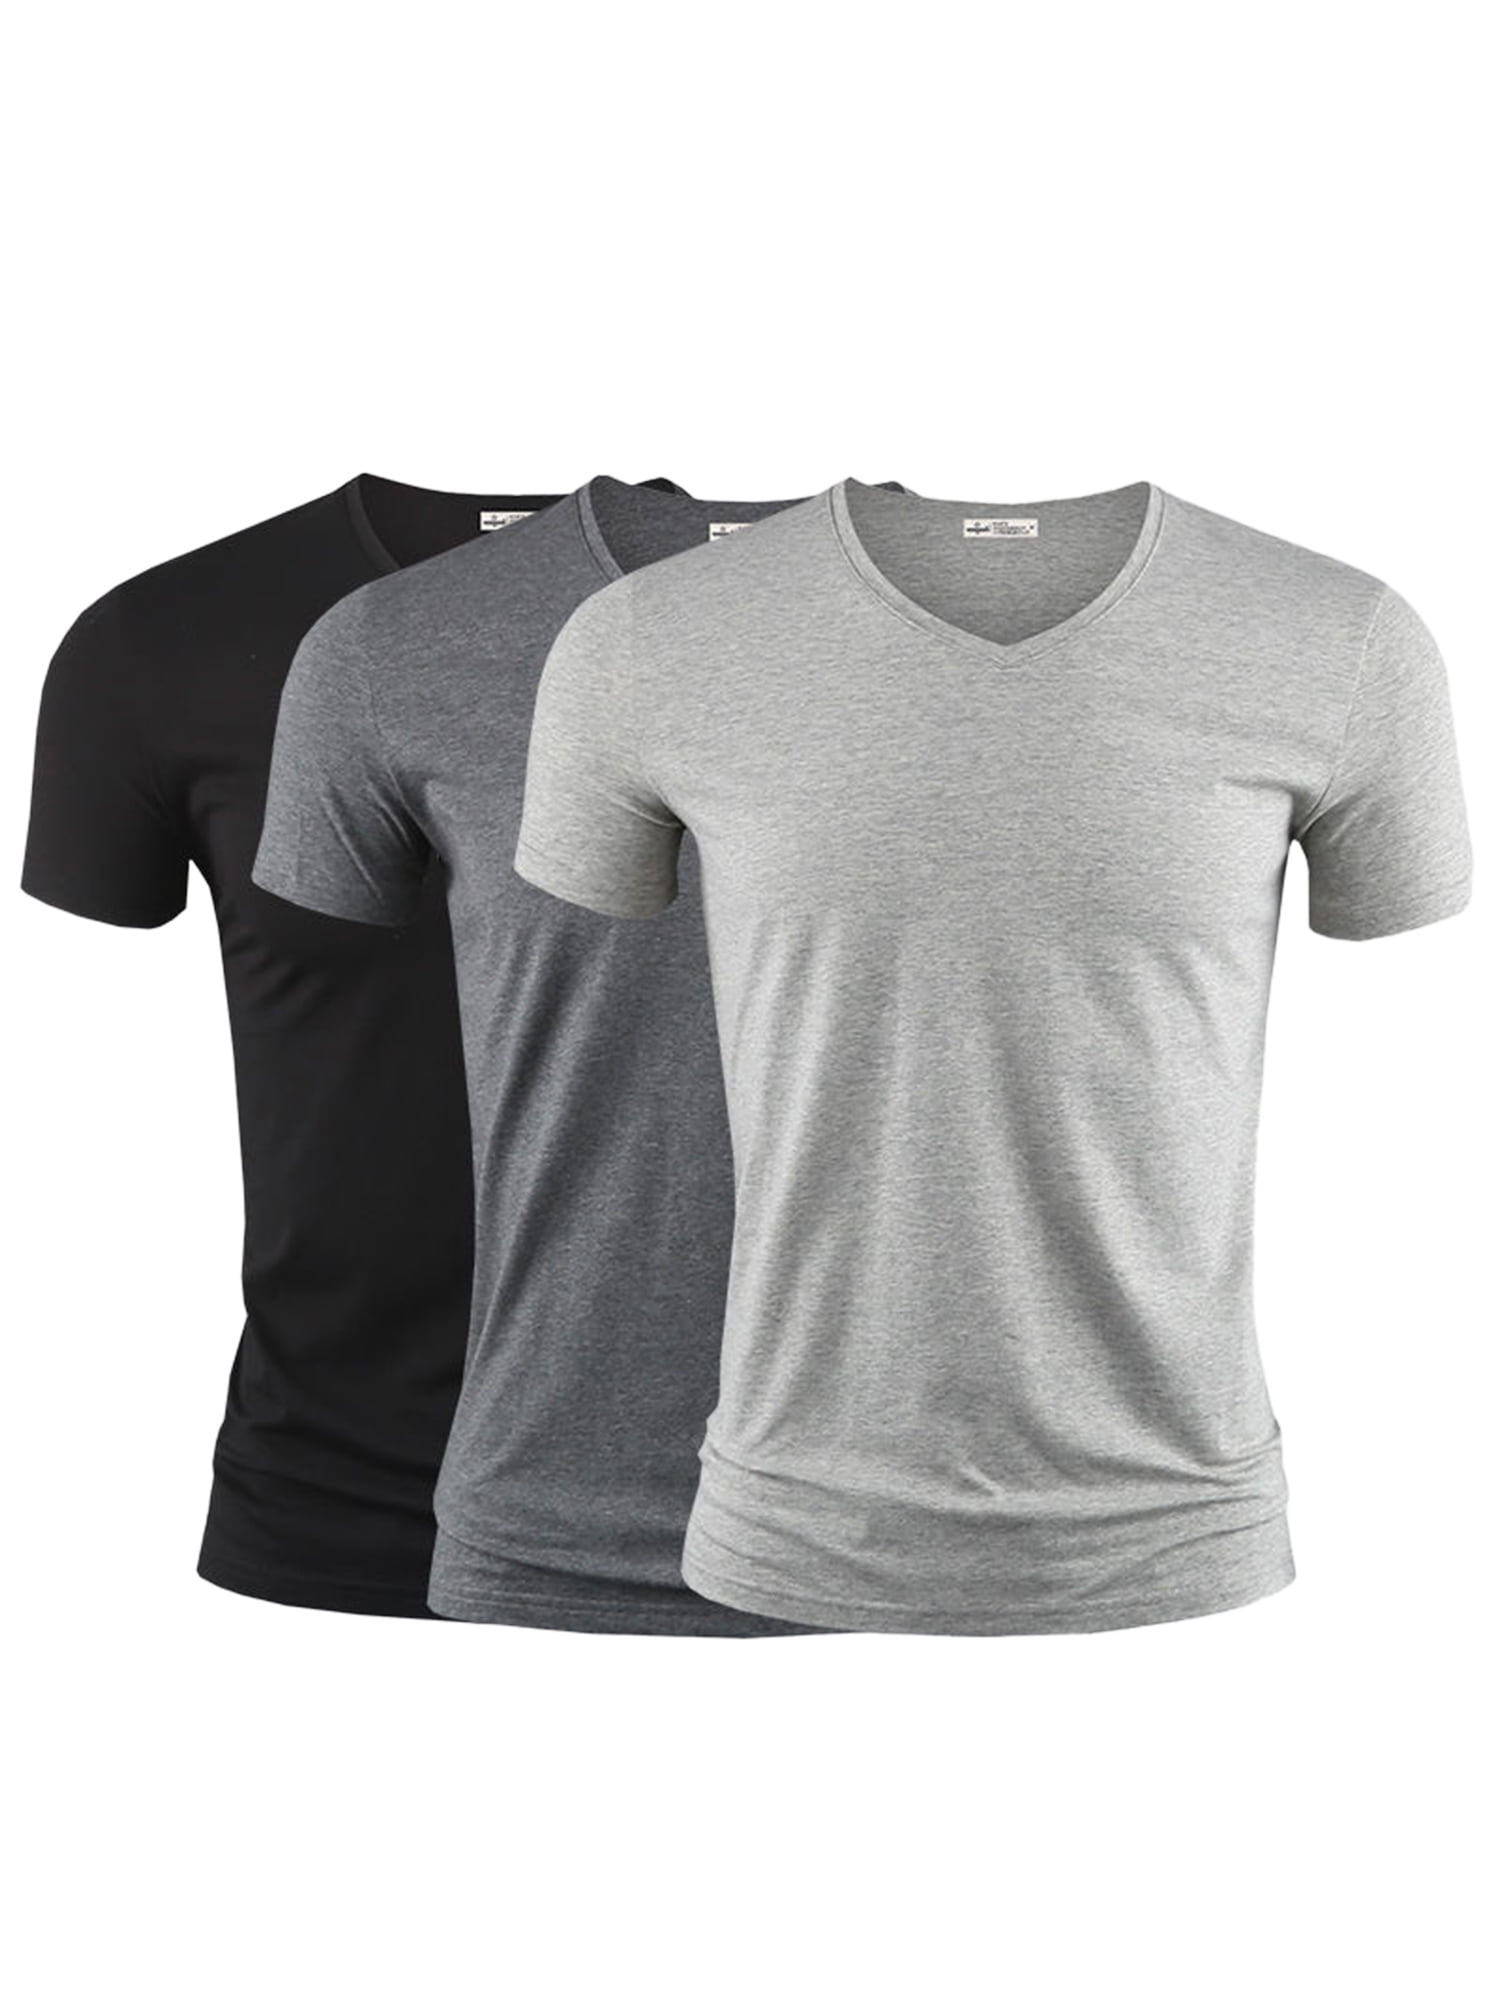 Hugo Boss Mens Solid Basic T-Shirt 